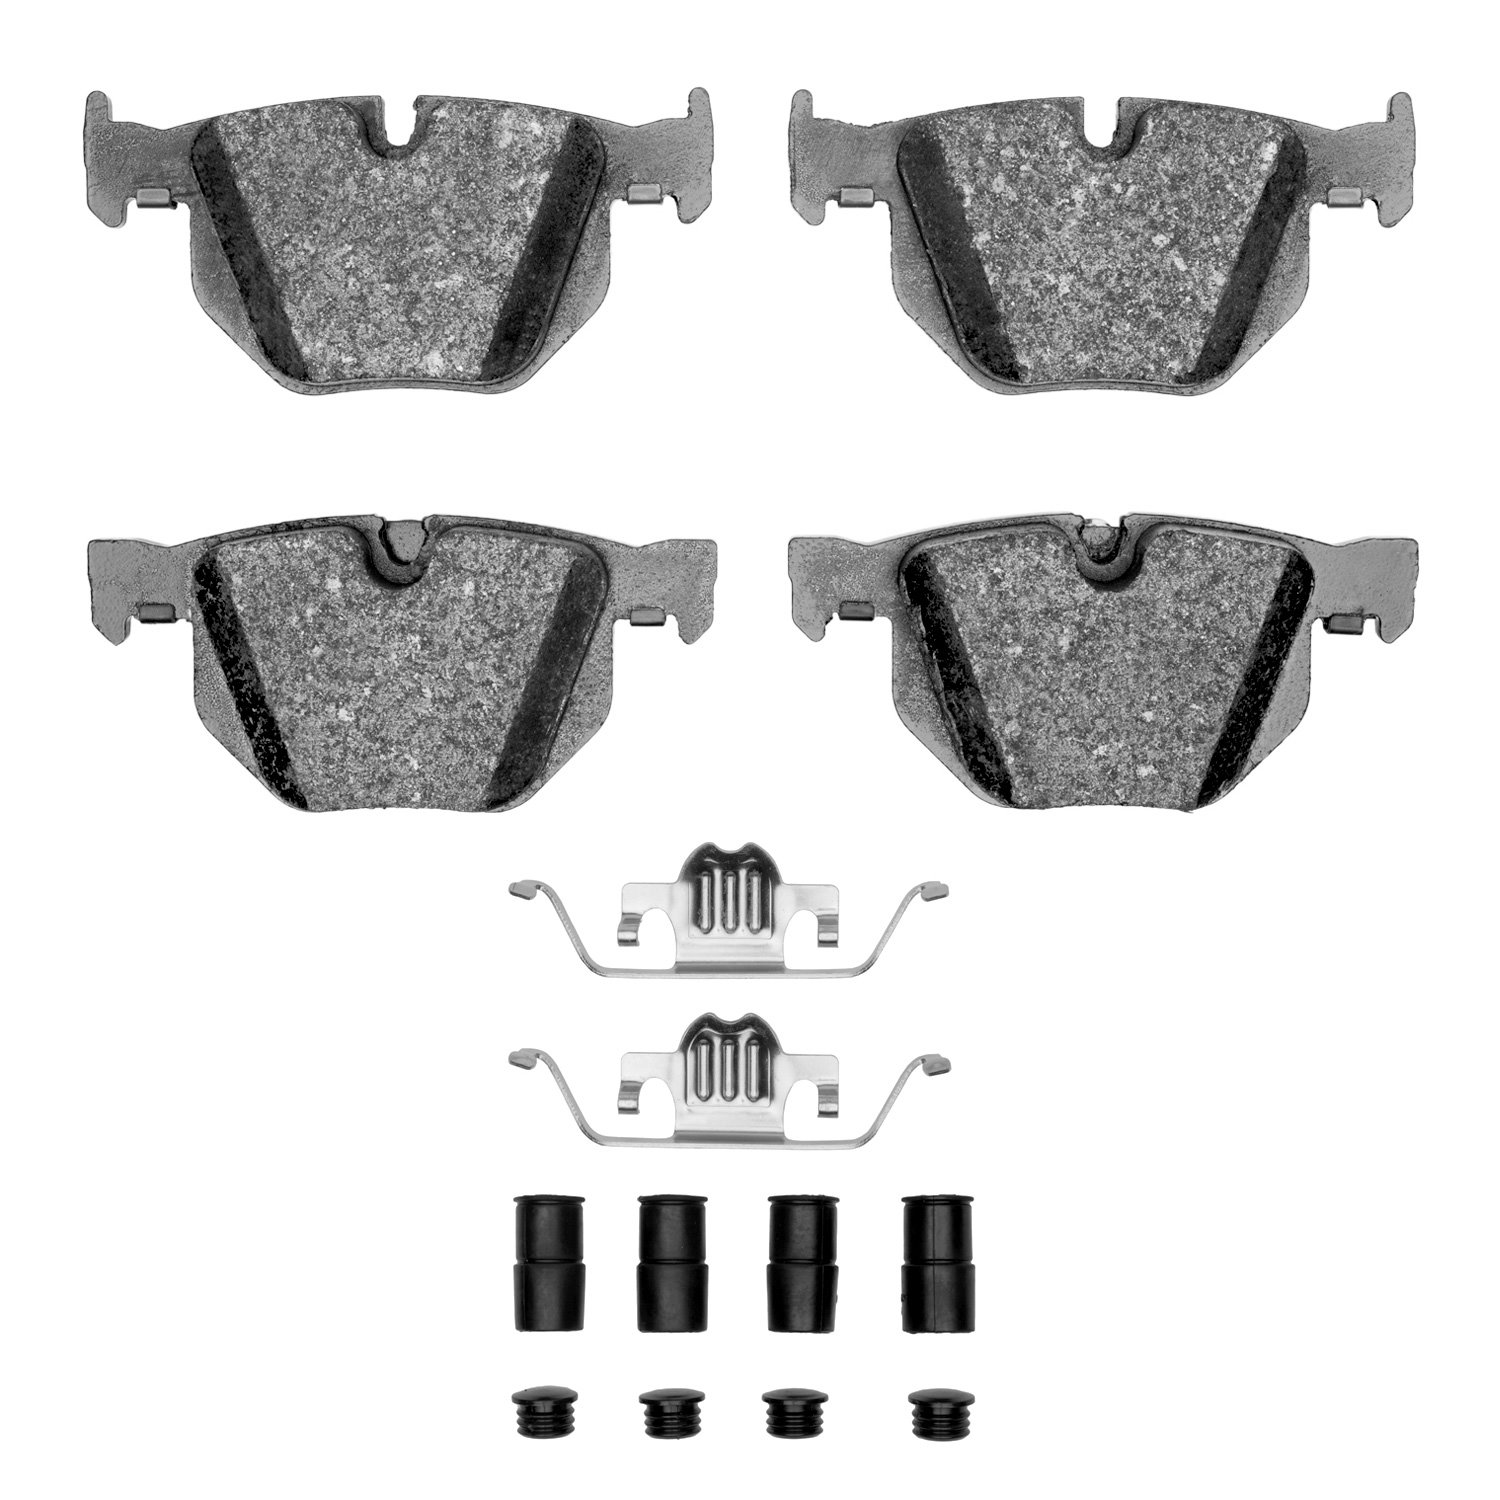 Semi-Metallic Brake Pads & Hardware Kit, 2004-2010 BMW, Position: Rear